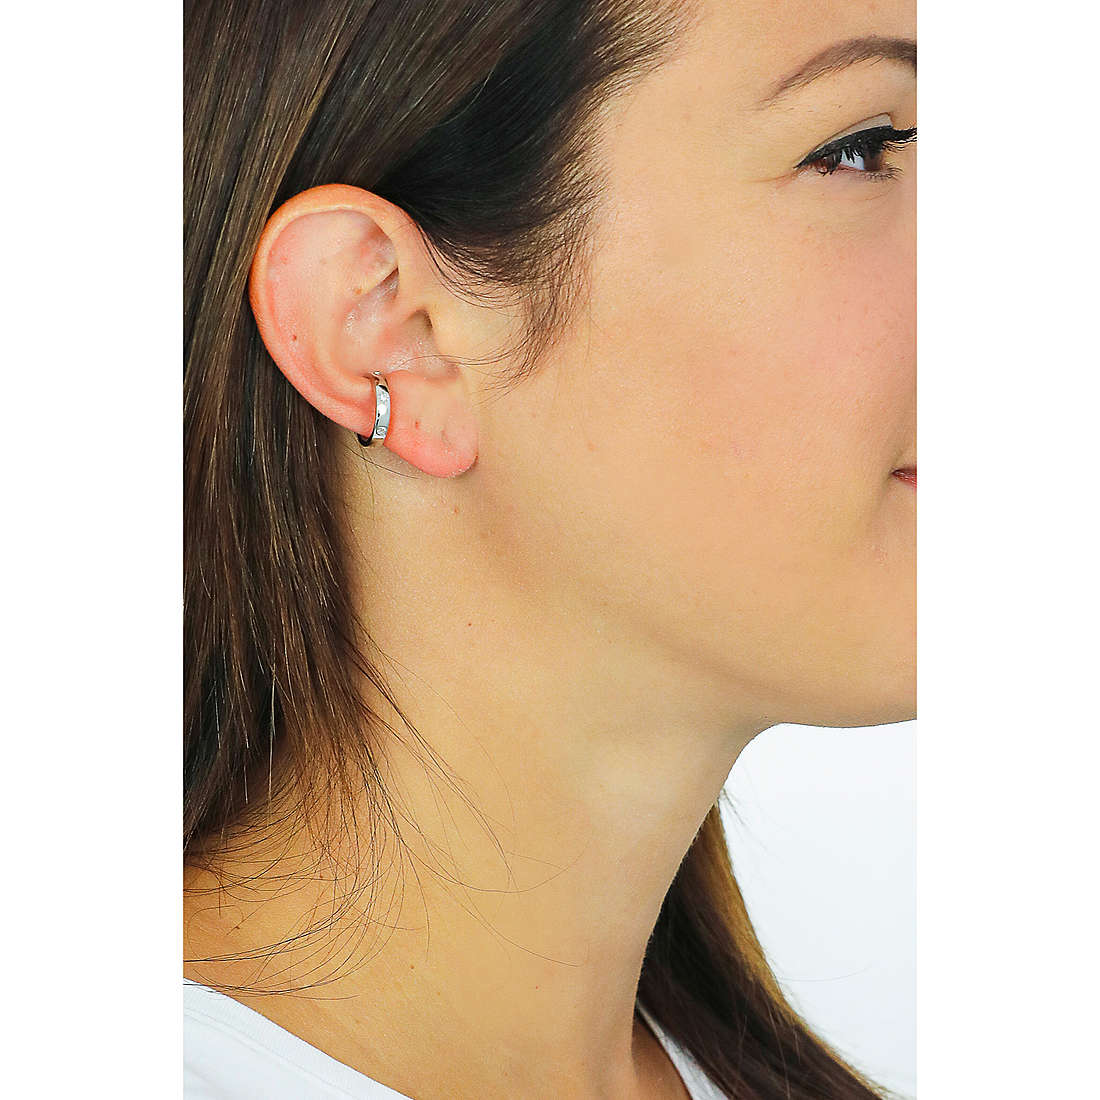 Rebecca earrings Golden ear woman SGEOBB21 wearing